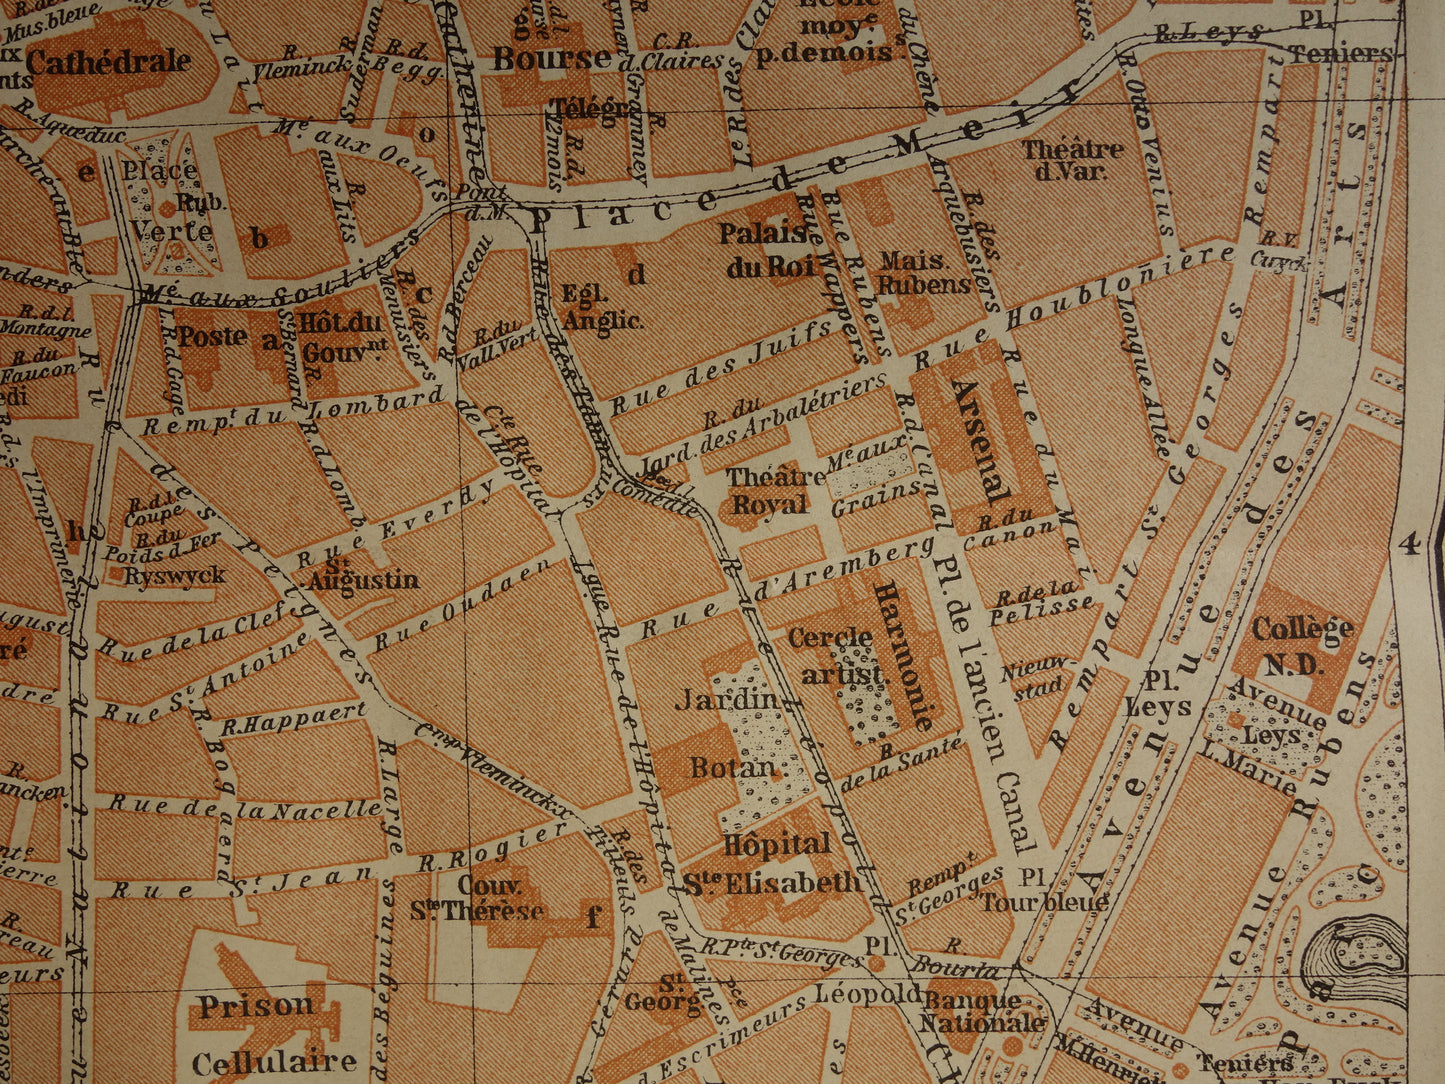 ANTWERPEN oude kaart van Antwerpen centrum België uit 1904 kleine originele antieke plattegrond landkaart